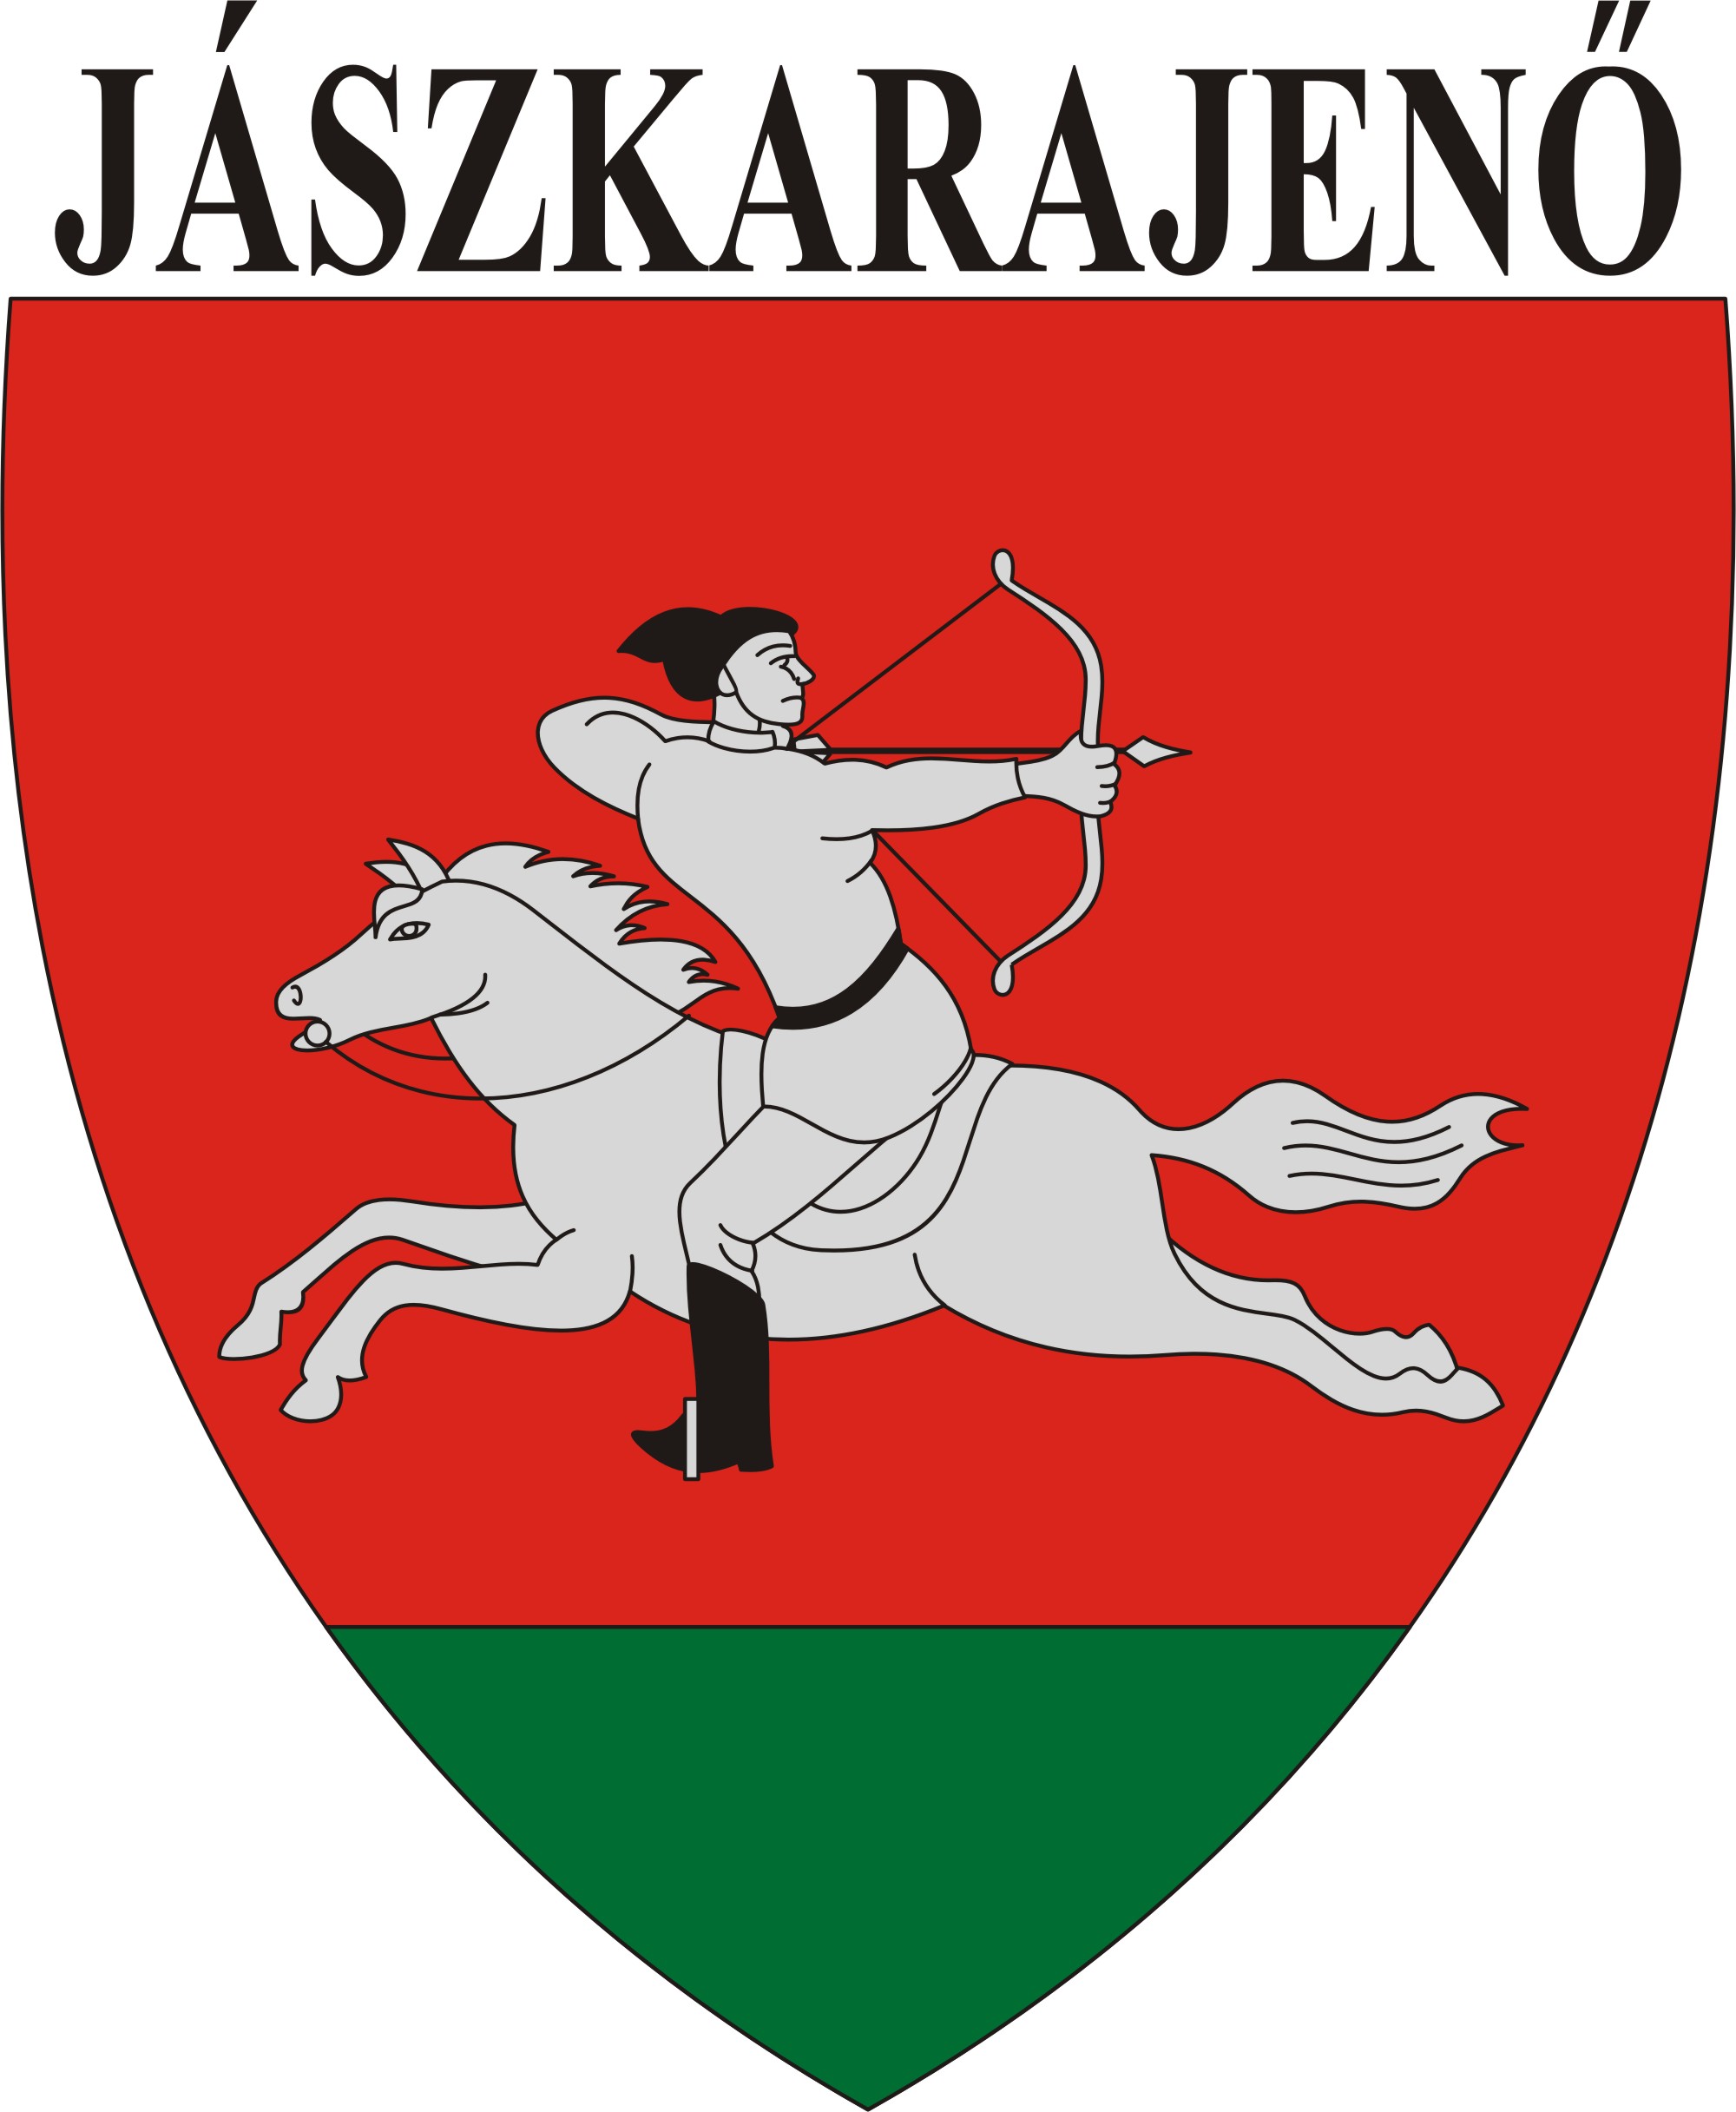 Jászkarajenő község